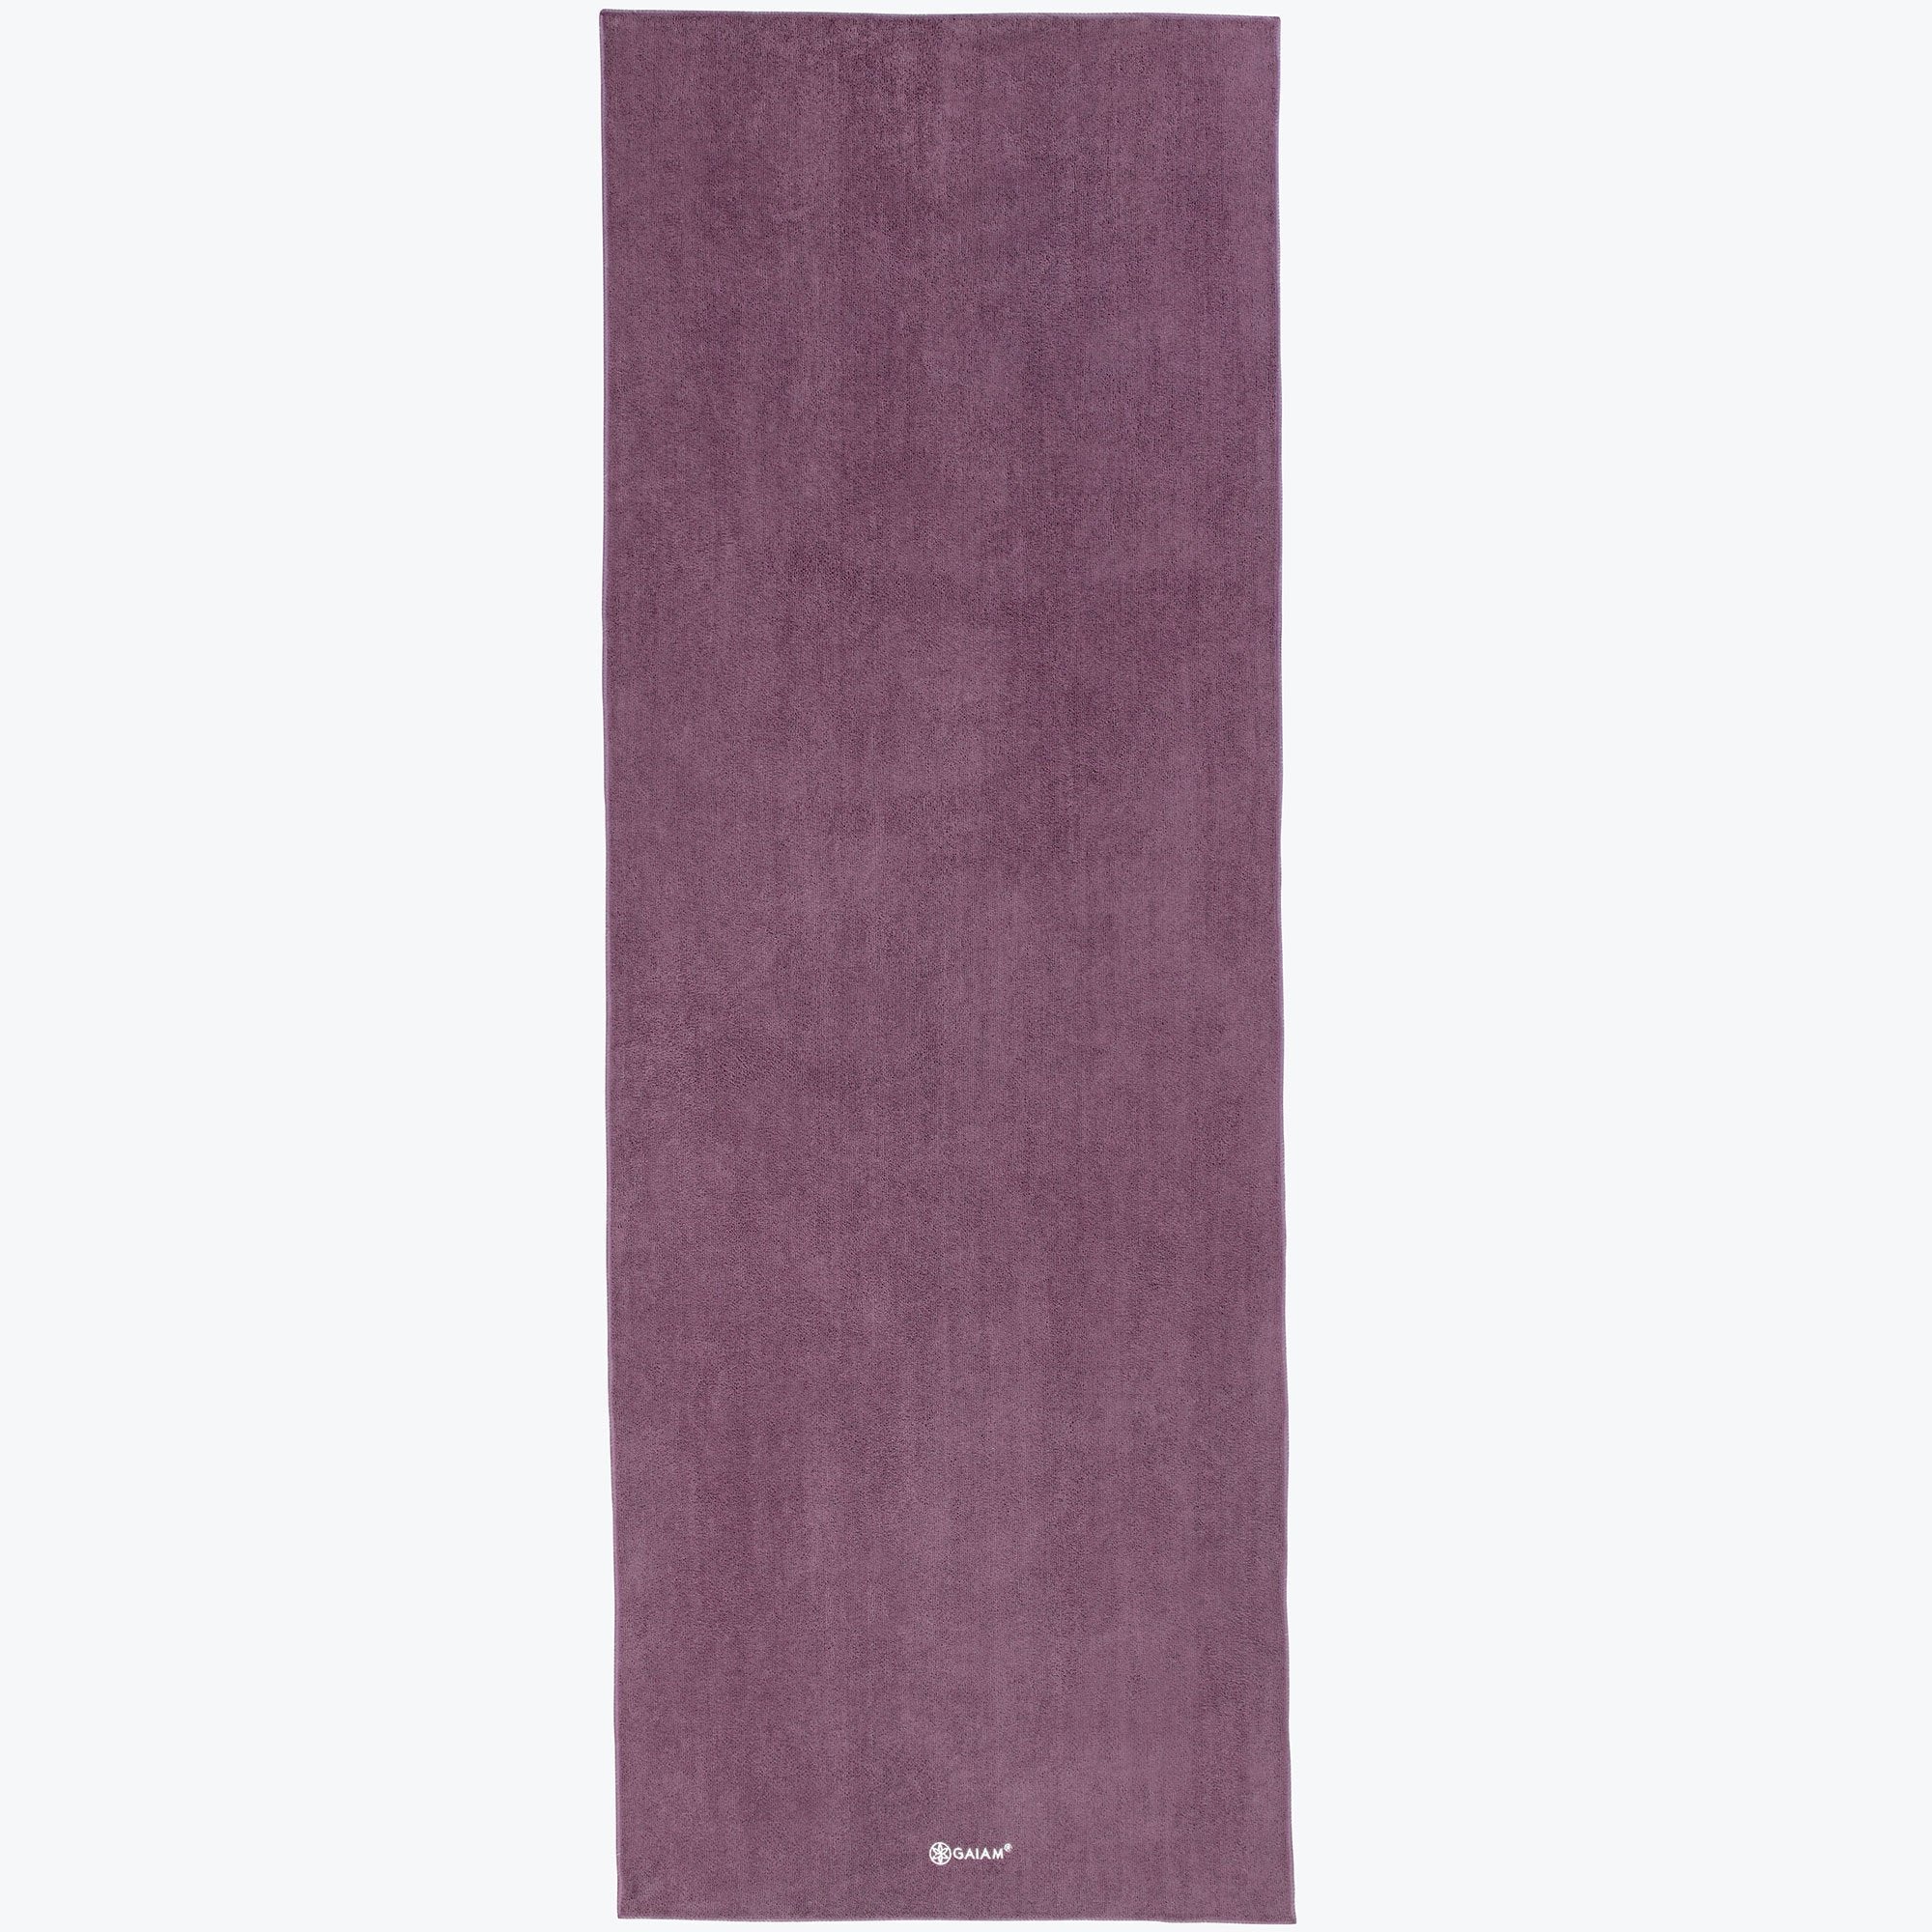 Yoga Mat Towel - Gaiam